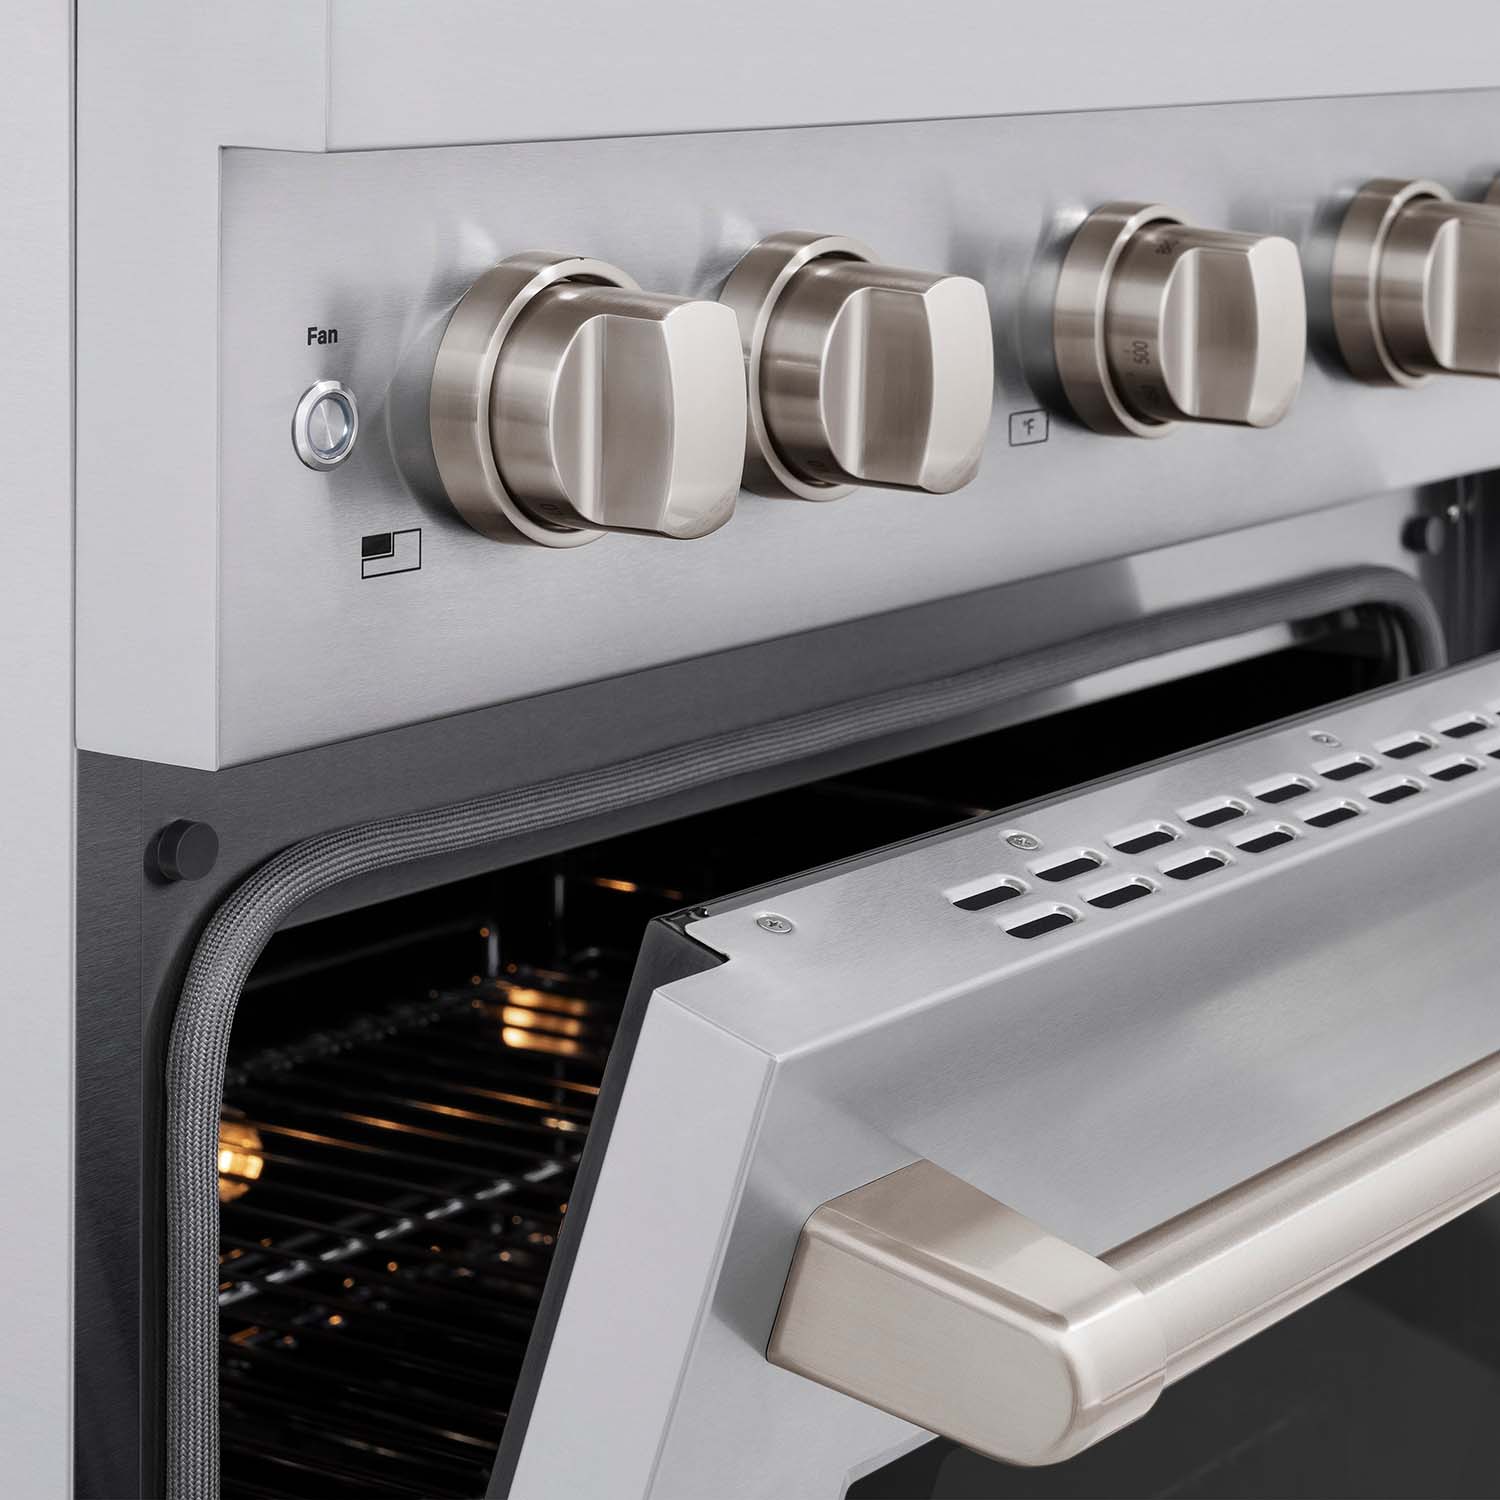 ZLINE 30" Stainless Steel Gas Range oven and cooktop knobs above oven door.